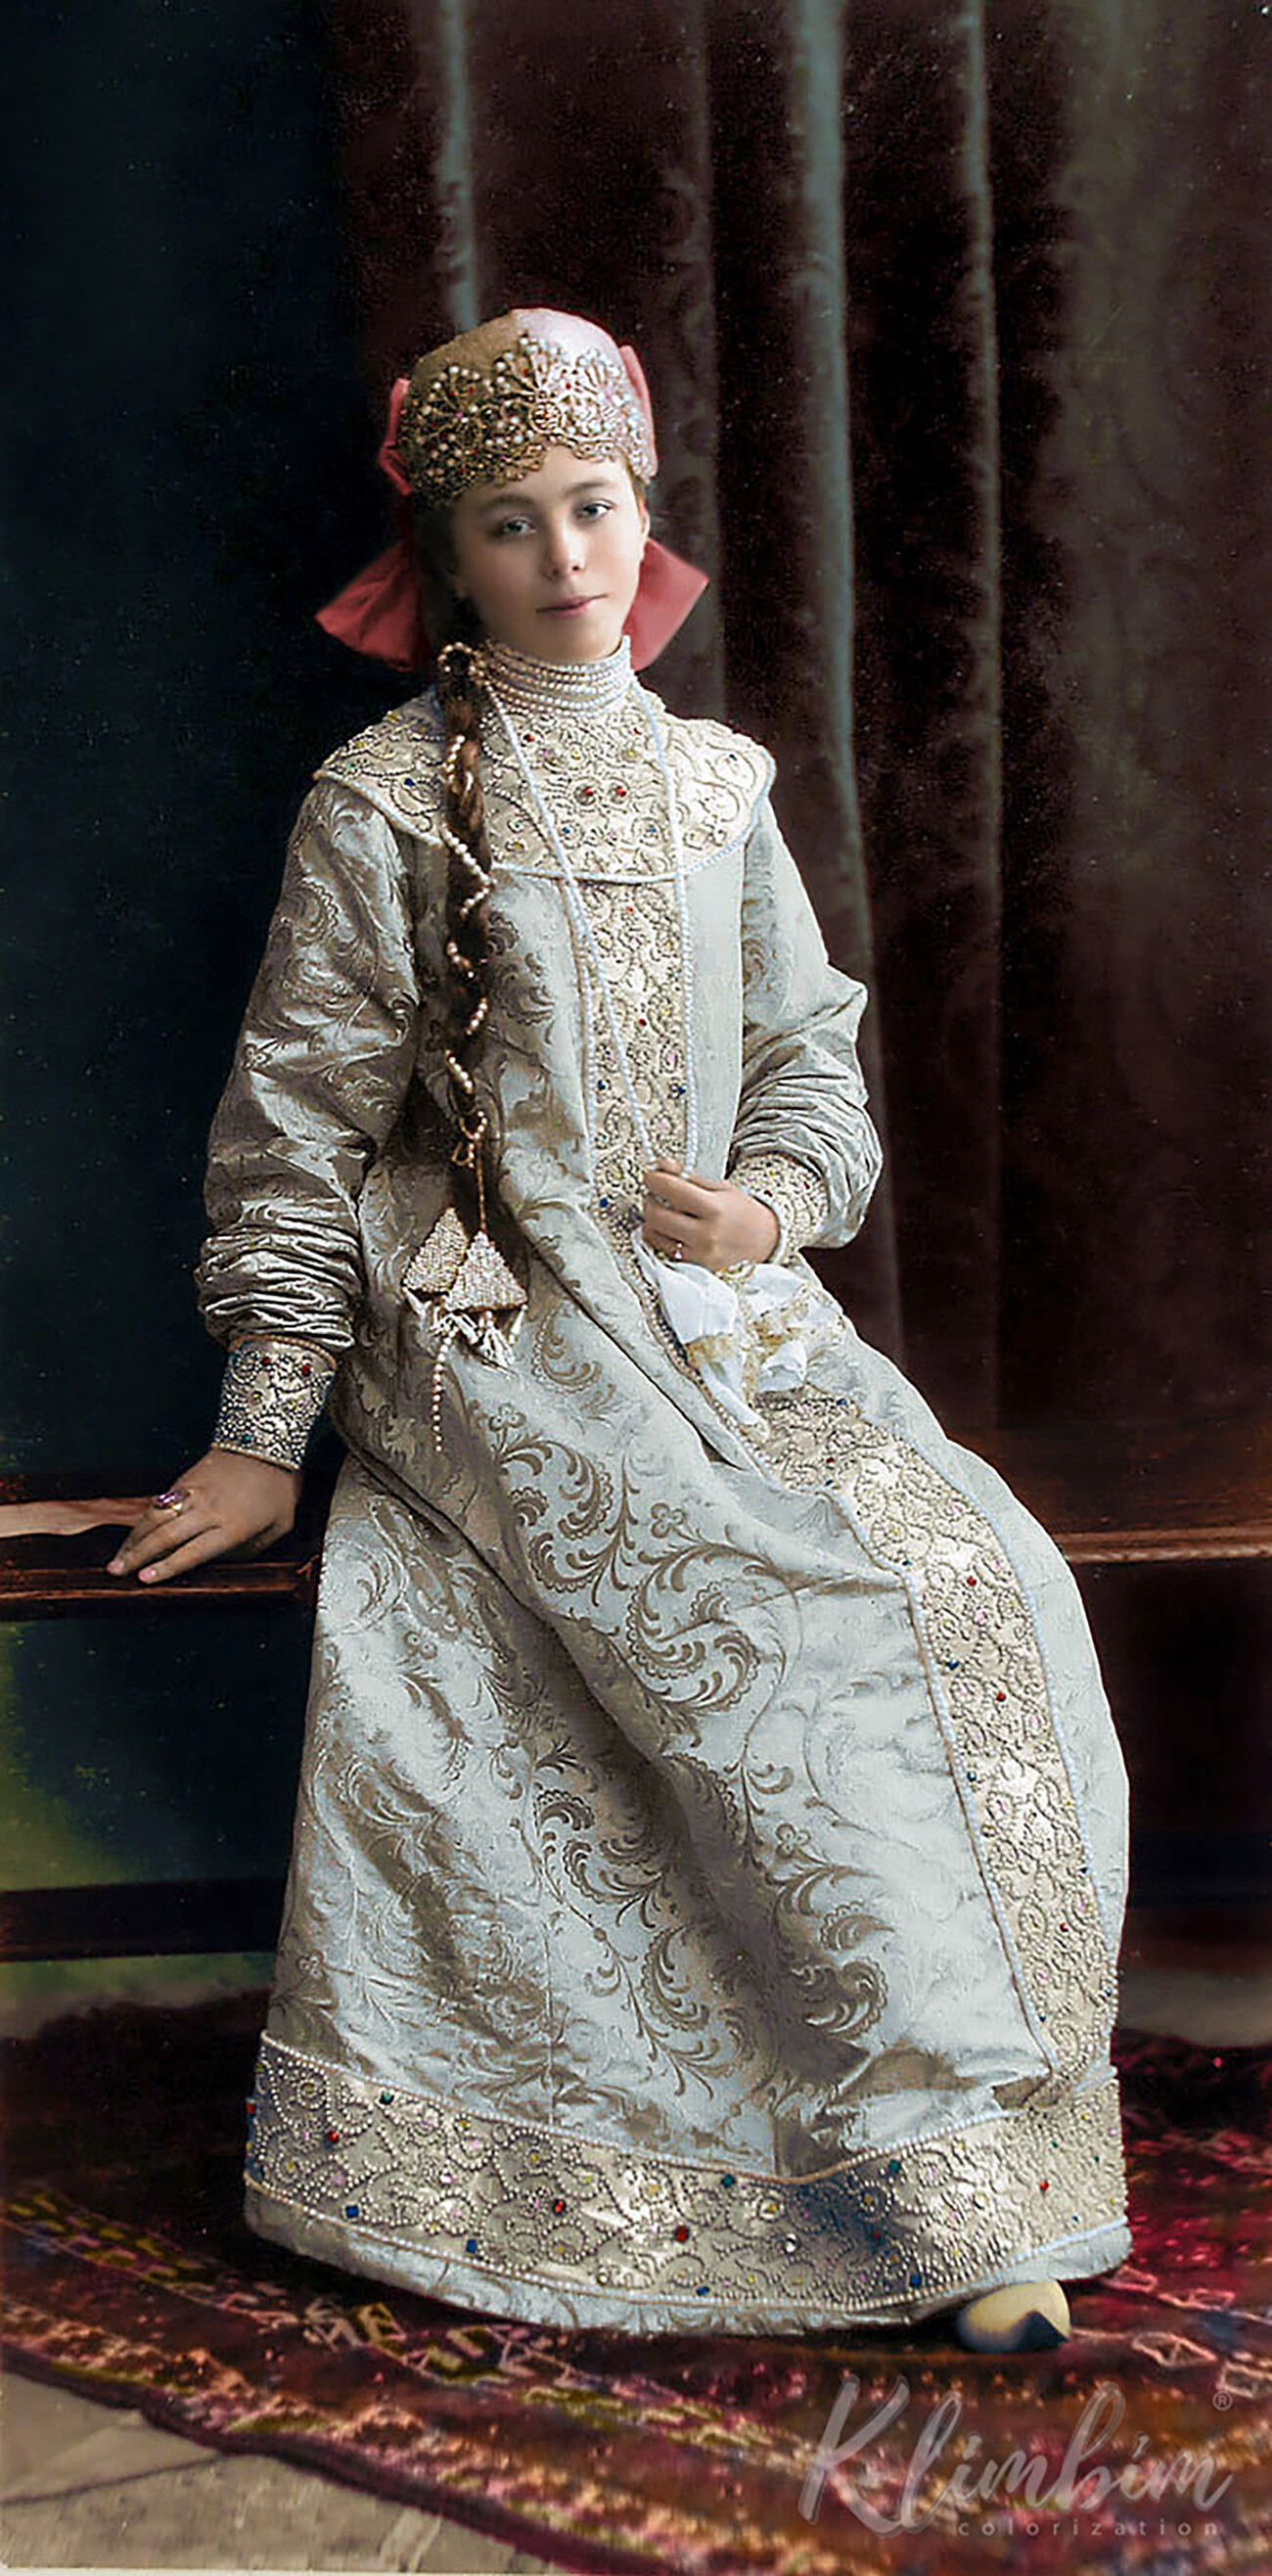 Дворска дама Јелисавета Шереметјева